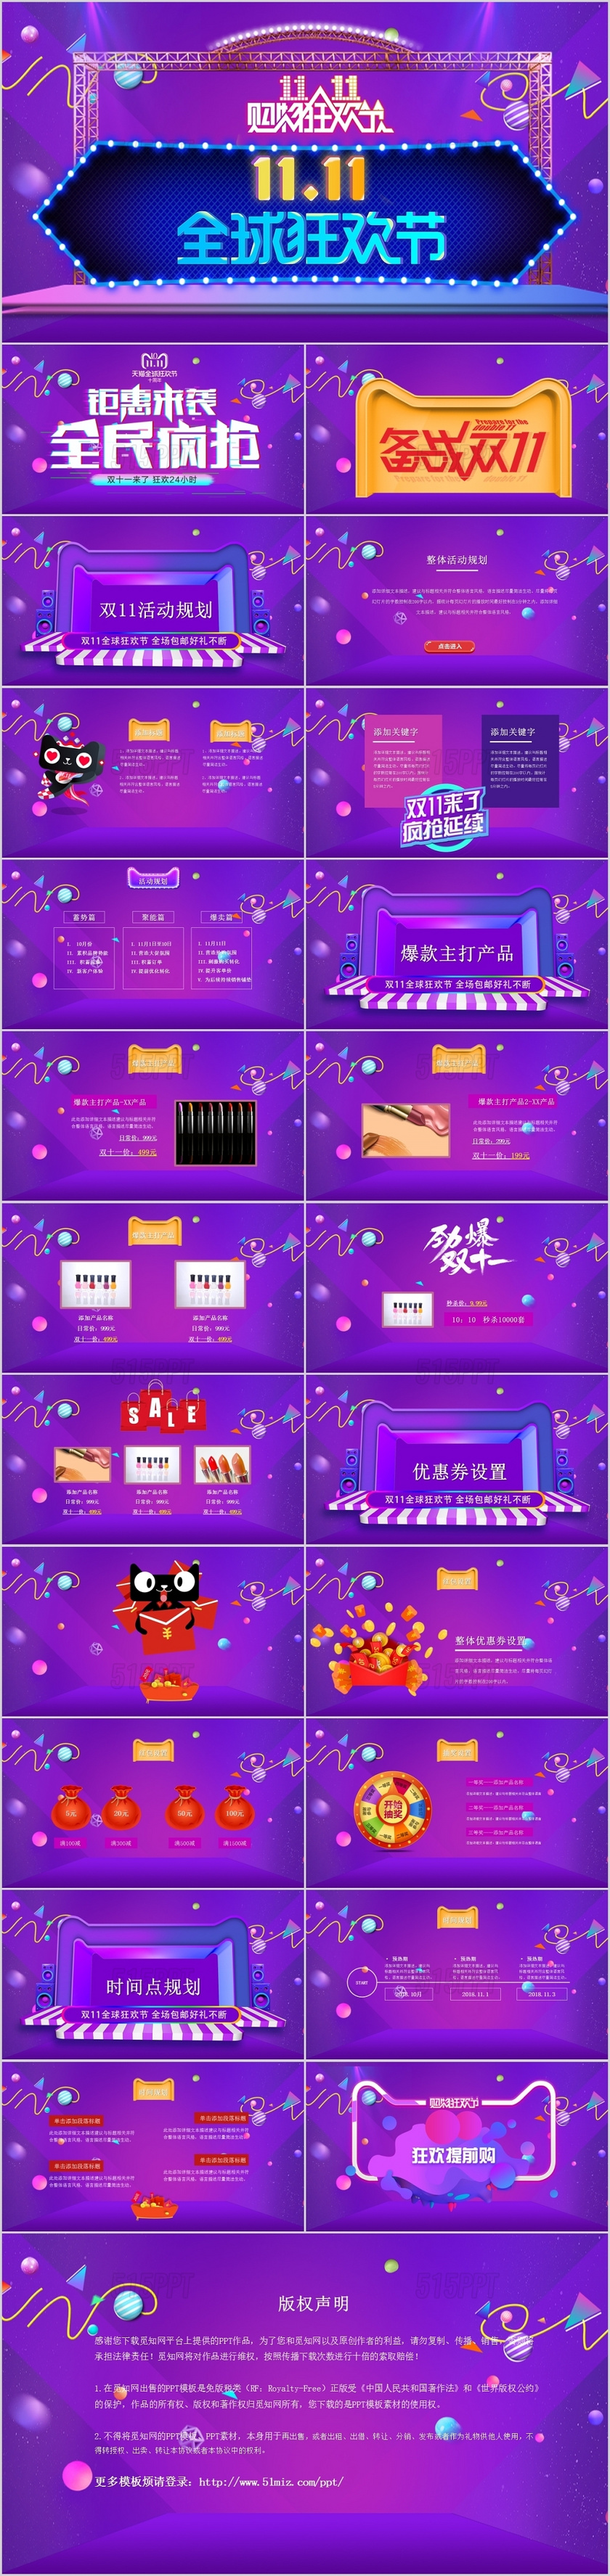 炫彩全城狂欢节天猫淘宝双十一电商活动营销策划app